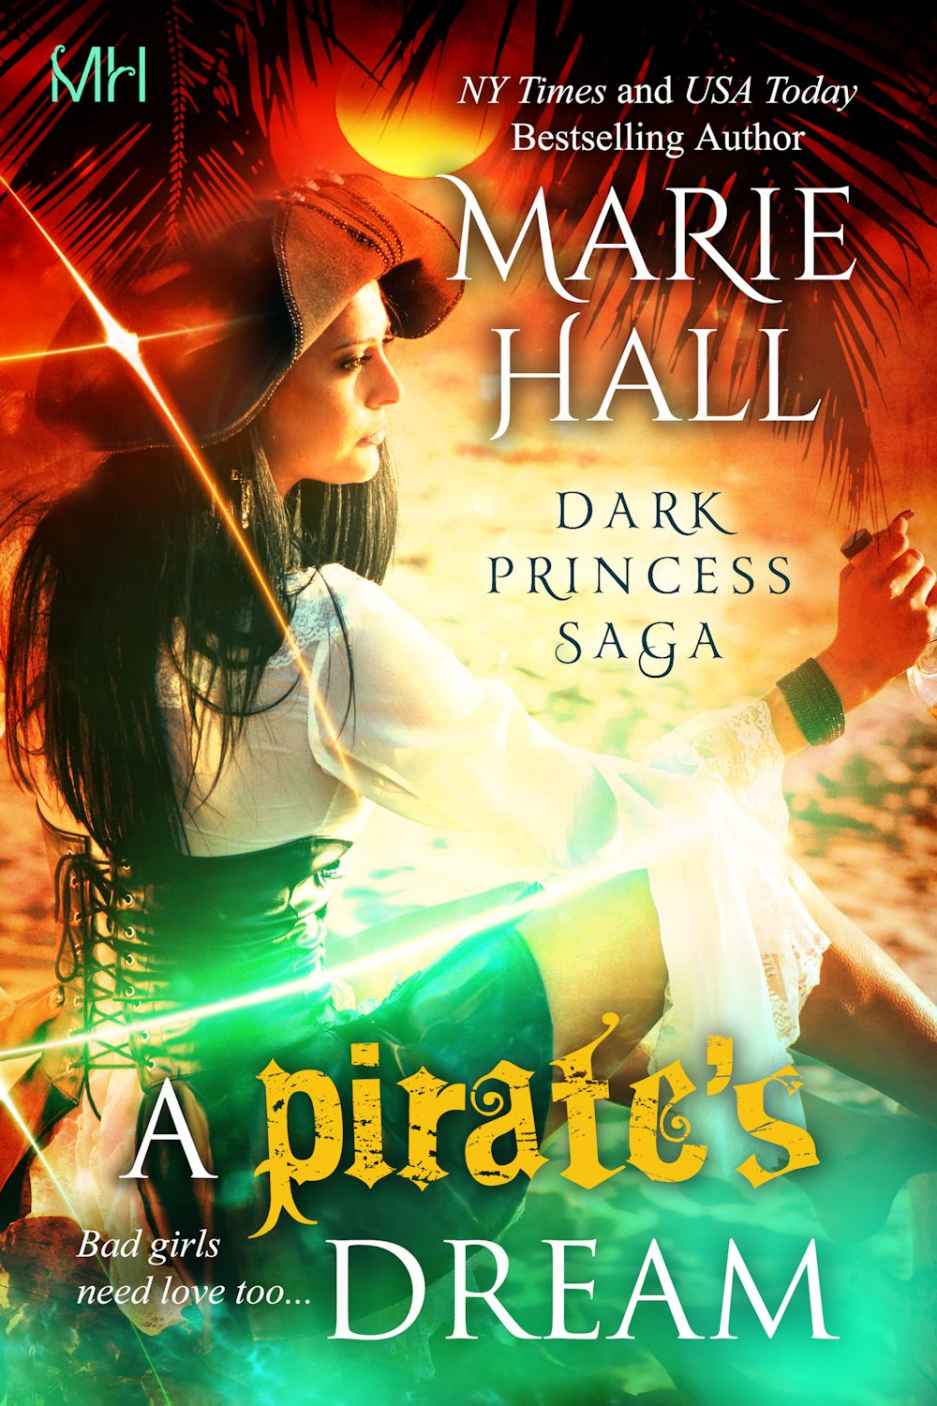 A Pirate's Dream